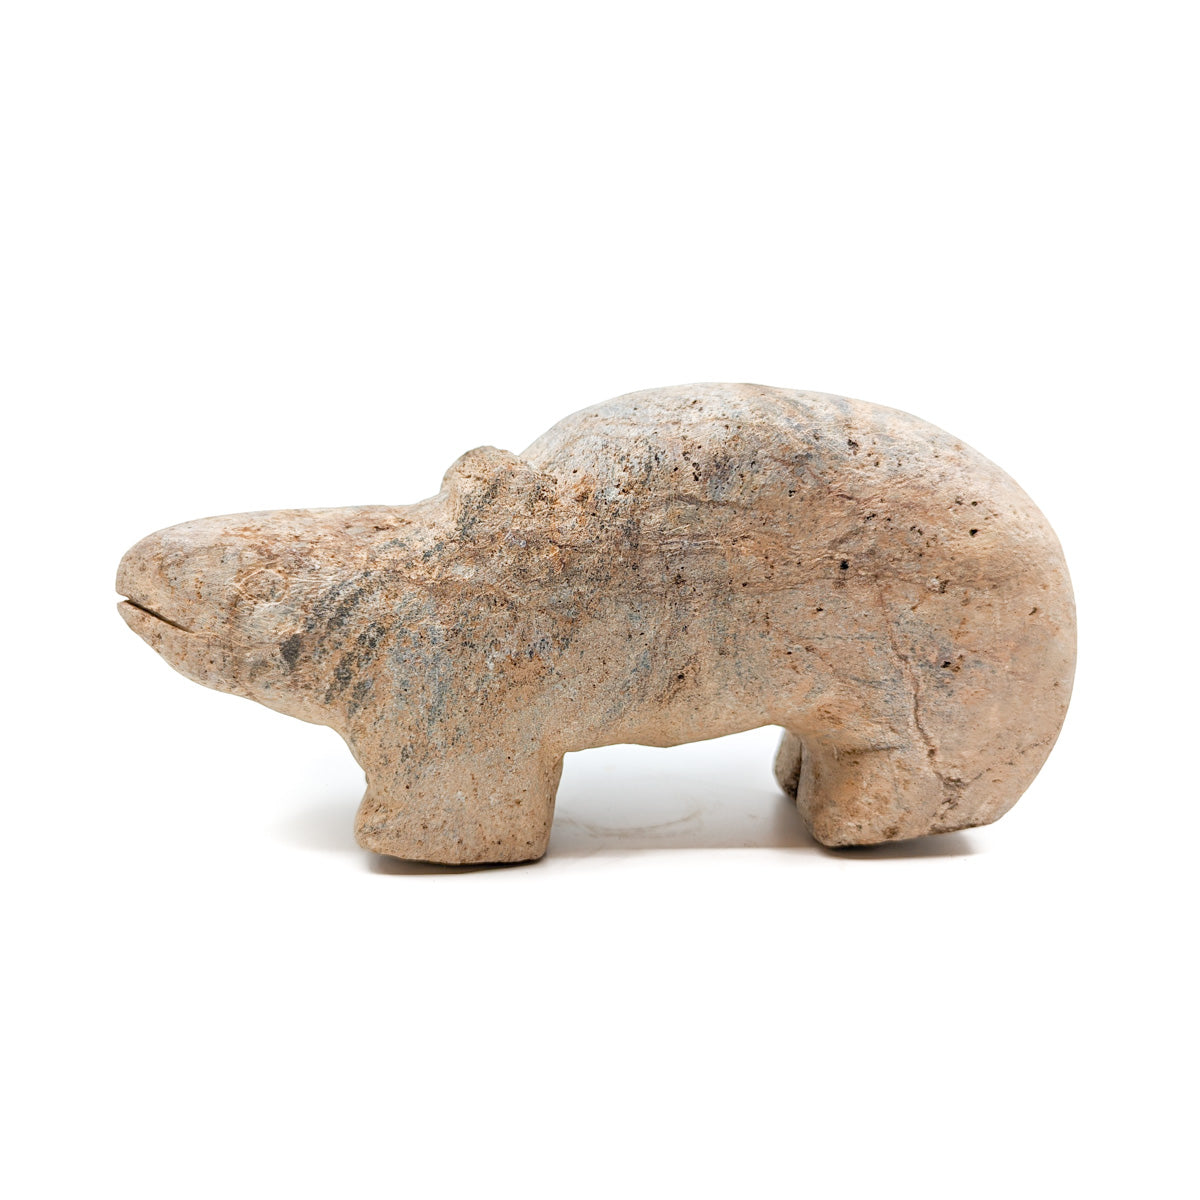 Yoreme (Mayo) Large Soapstone Animal Carving